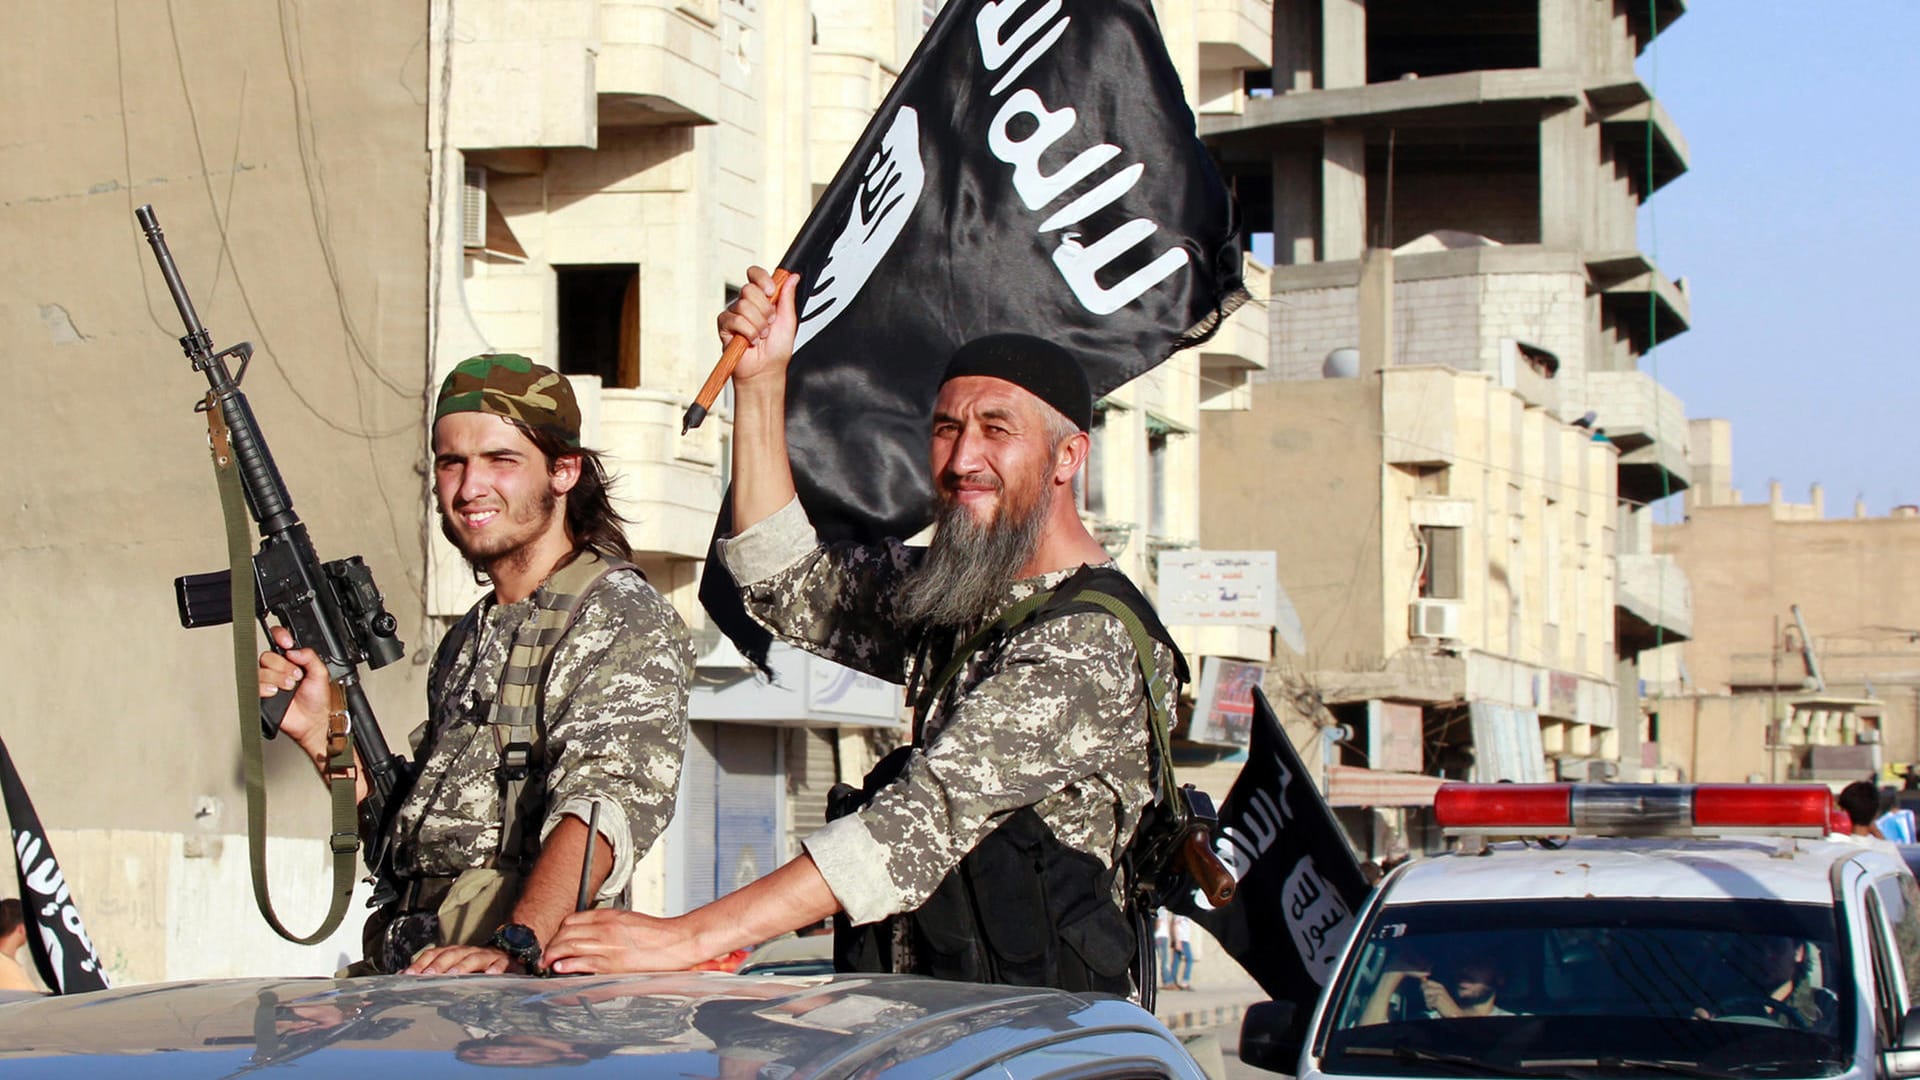 Essen | Polizei nimmt mutmaßlichen IS-Terroristen fest